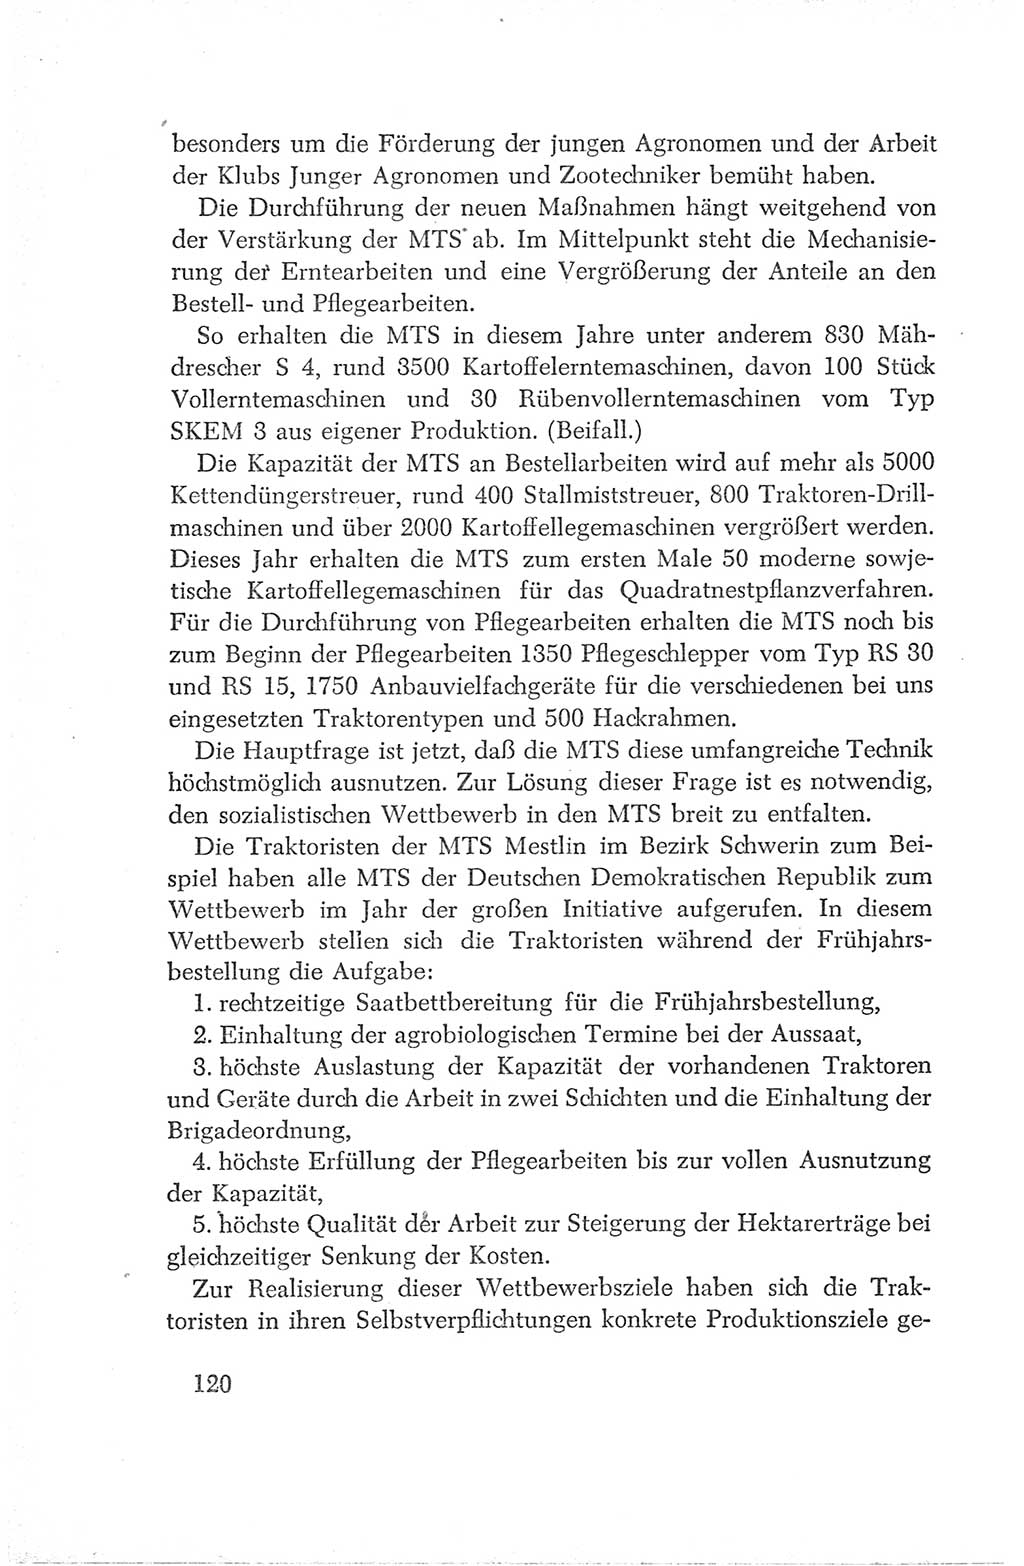 Protokoll der Verhandlungen des Ⅳ. Parteitages der Sozialistischen Einheitspartei Deutschlands (SED) [Deutsche Demokratische Republik (DDR)] 1954, Seite 120